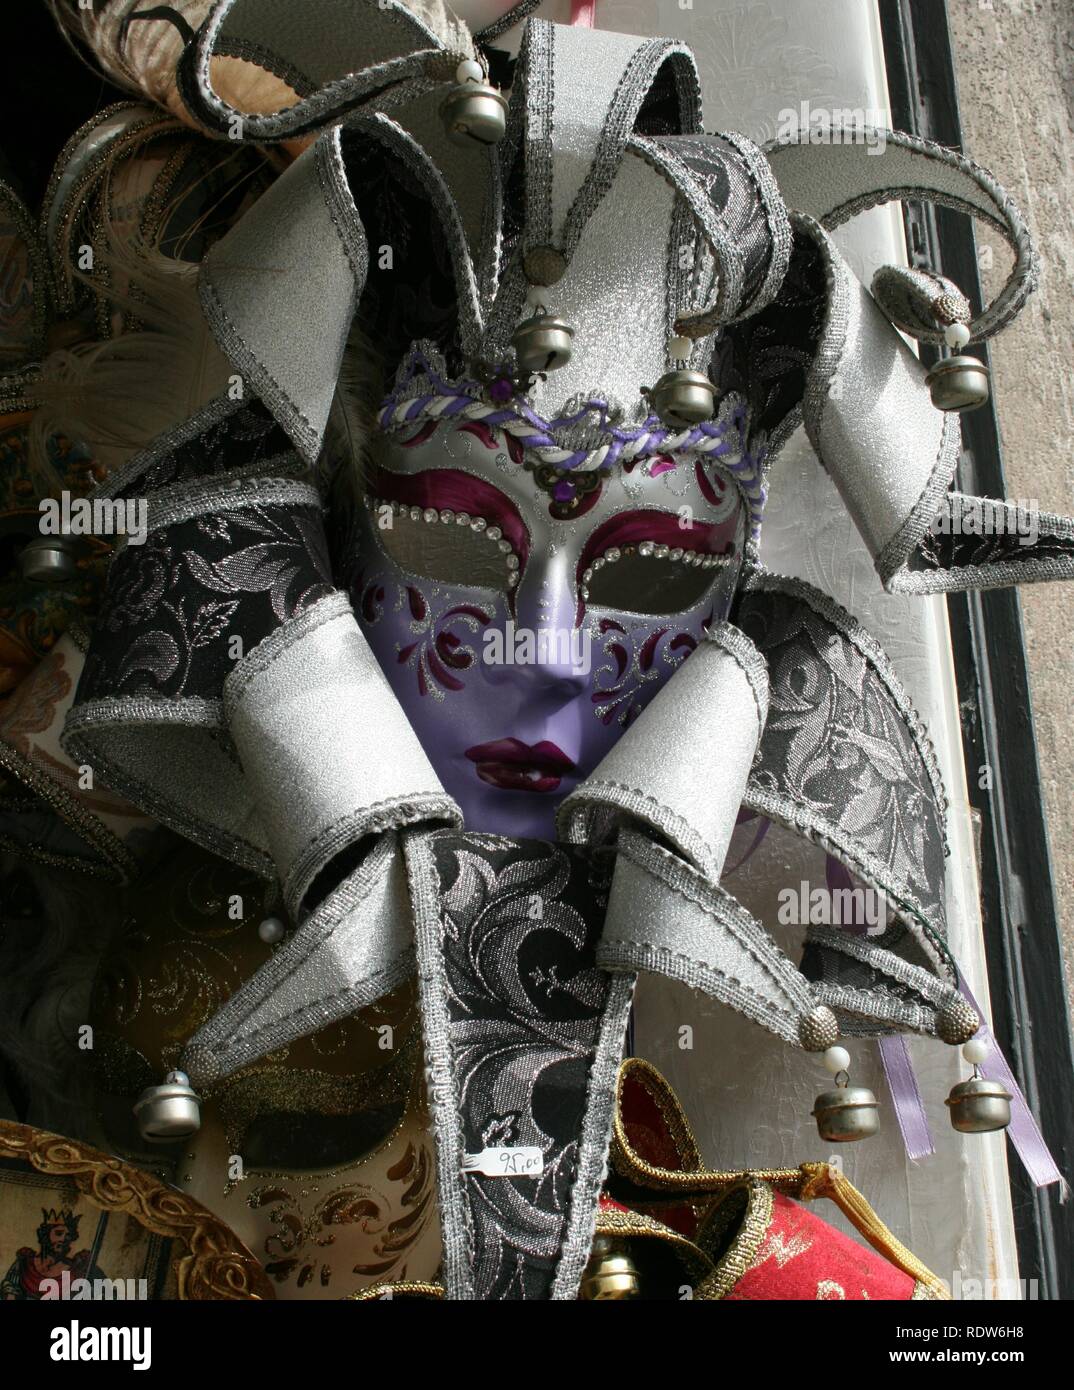 La máscara de carnaval de Venecia Foto de stock